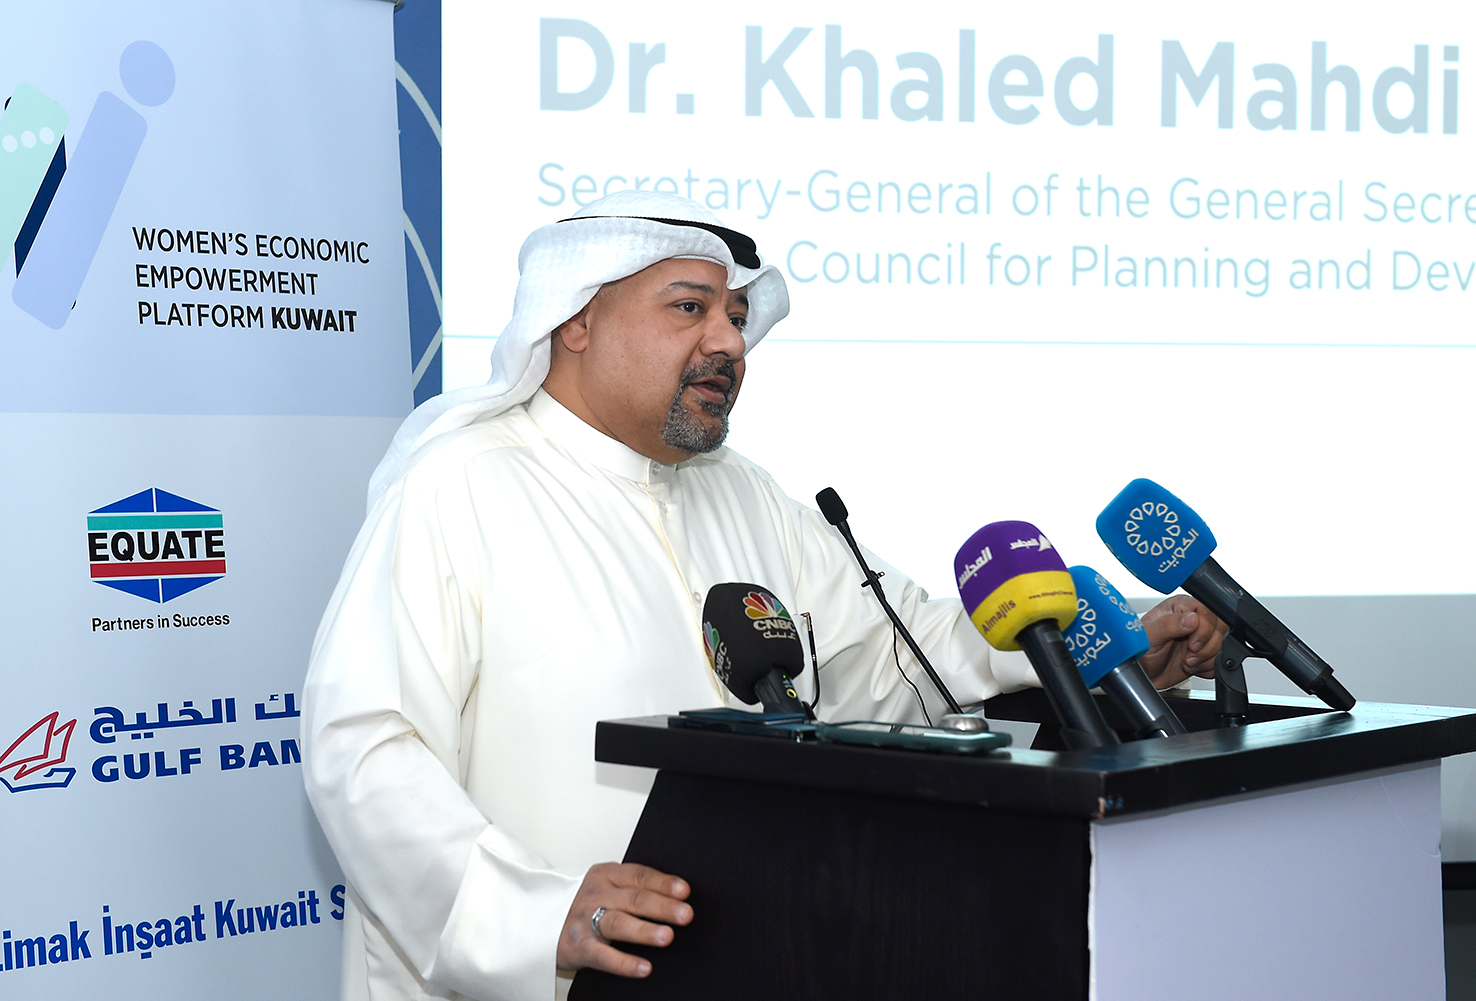 الأمين العام للأمانة العامة للمجلس الأعلى للتخطيط والتنمية الدكتور خالد مهدي